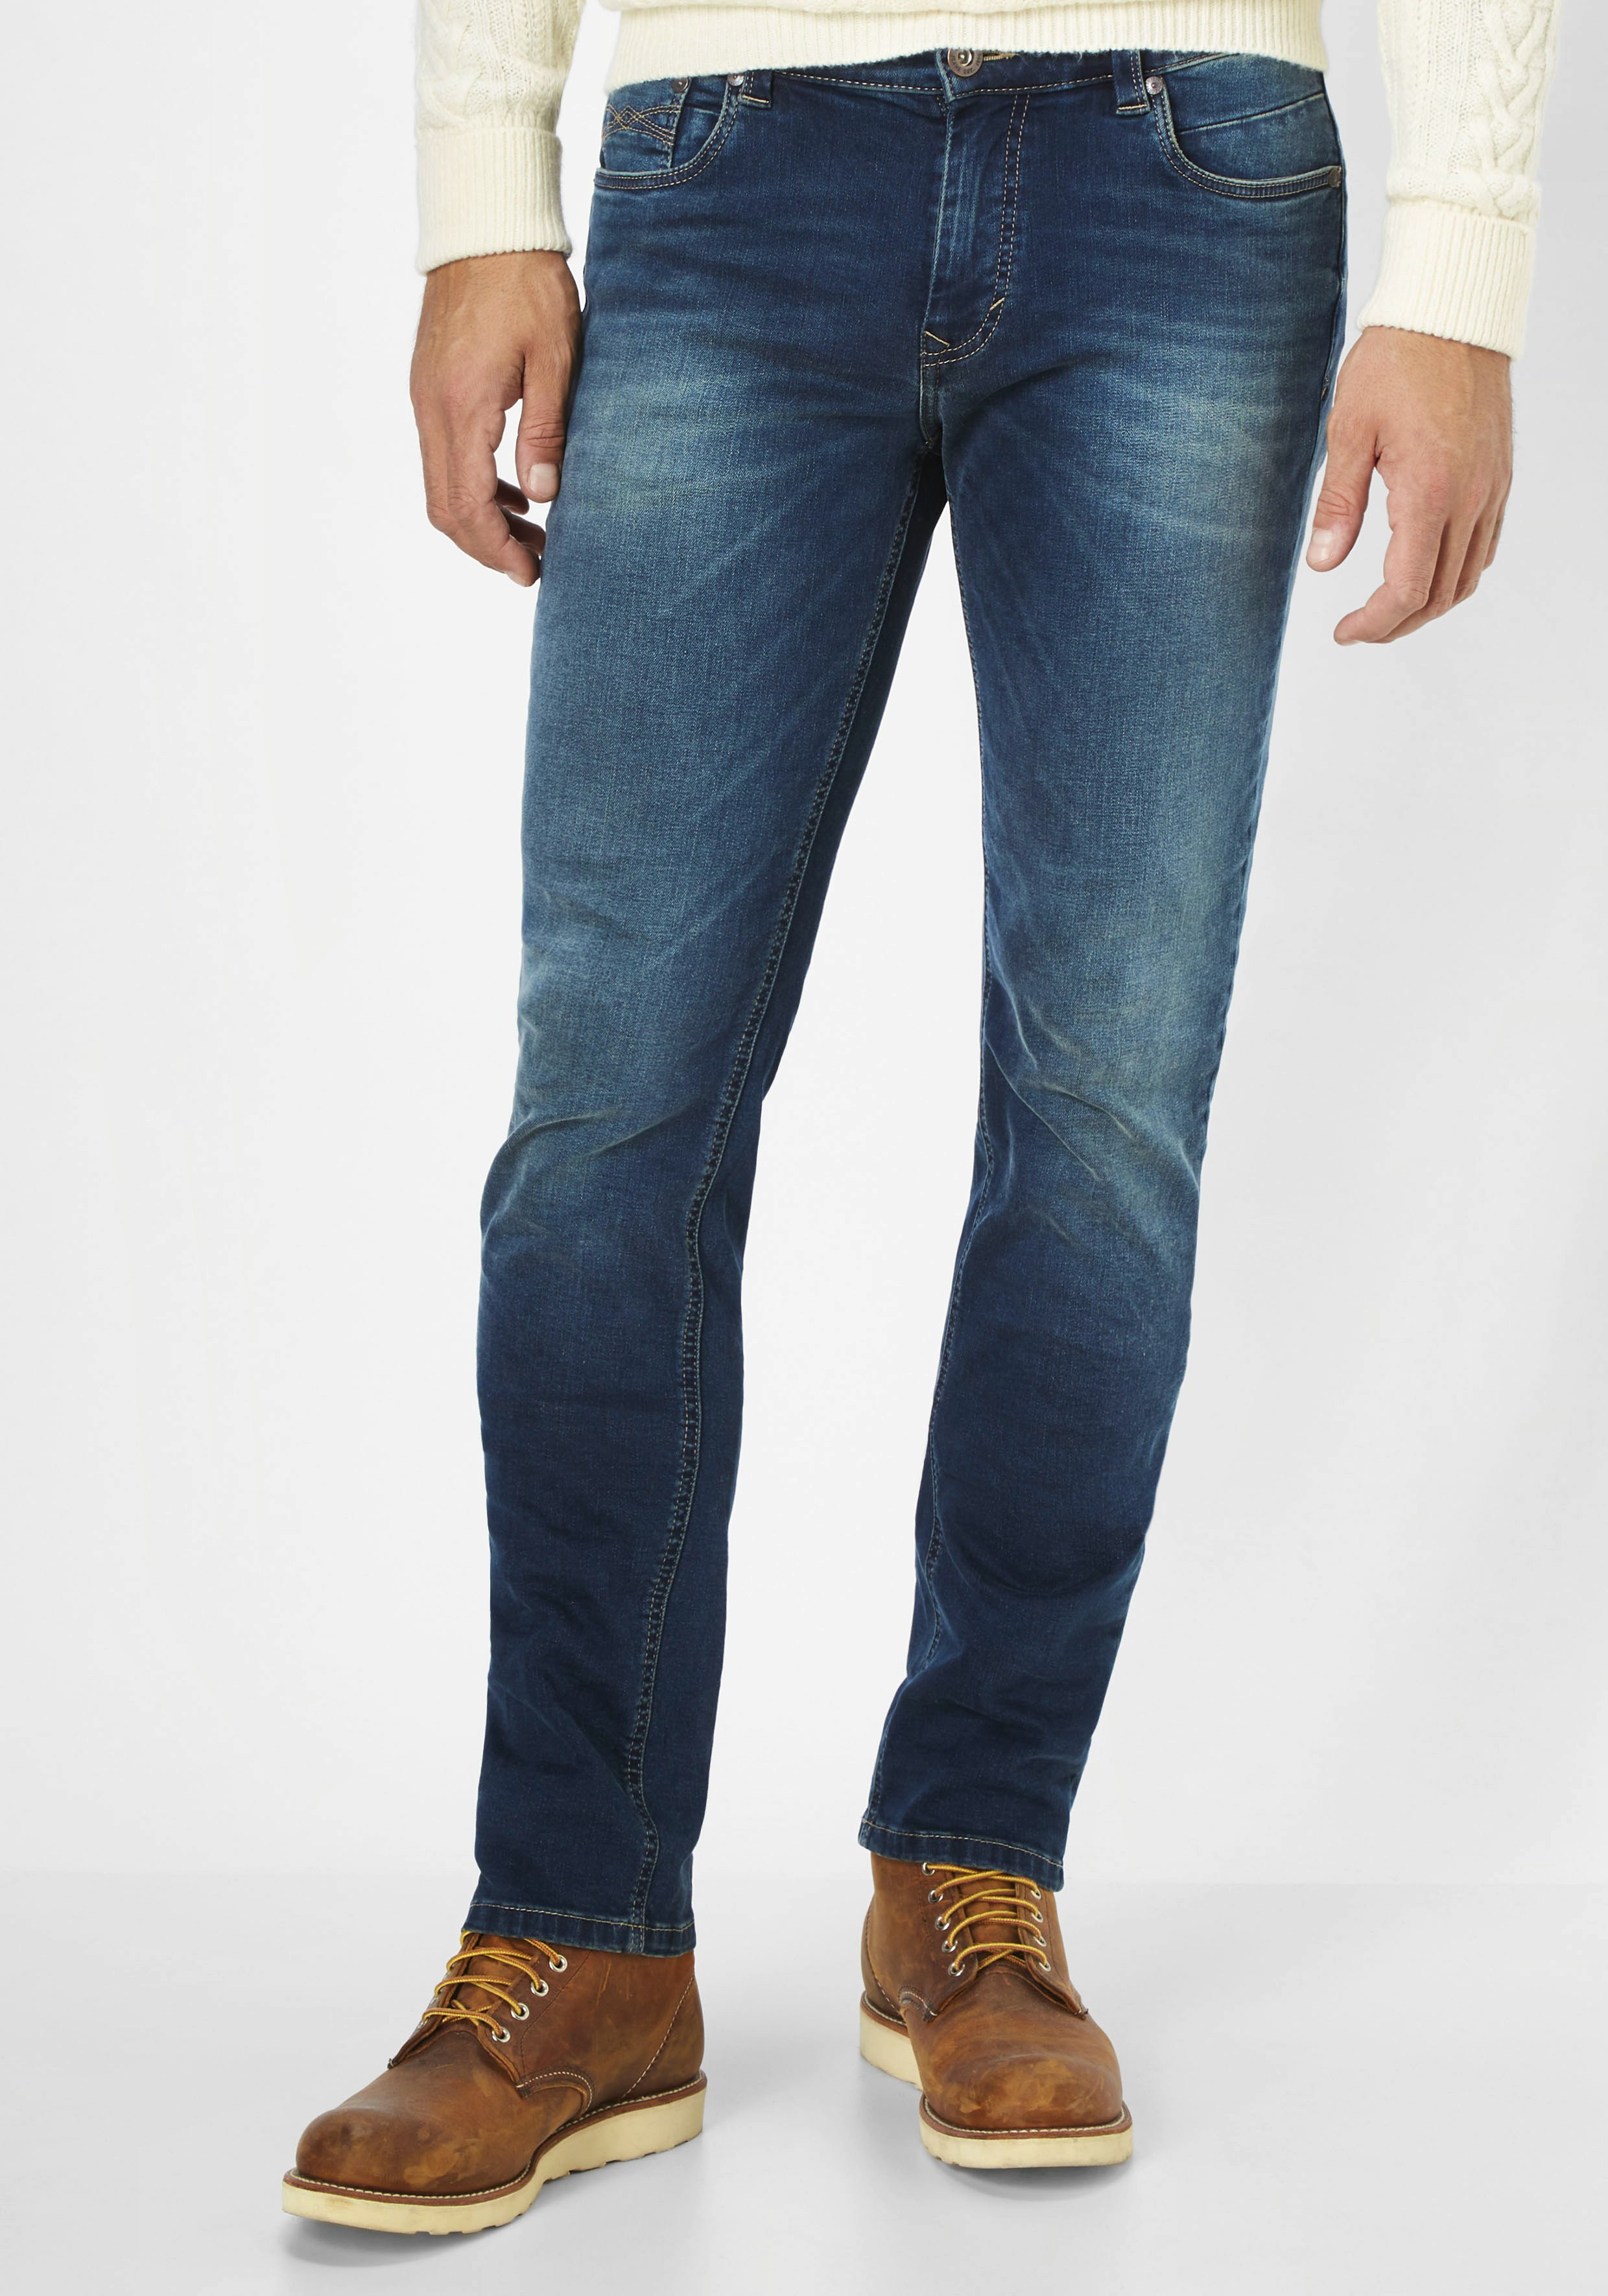 Paddock's Ben Motion Comfort Jeans